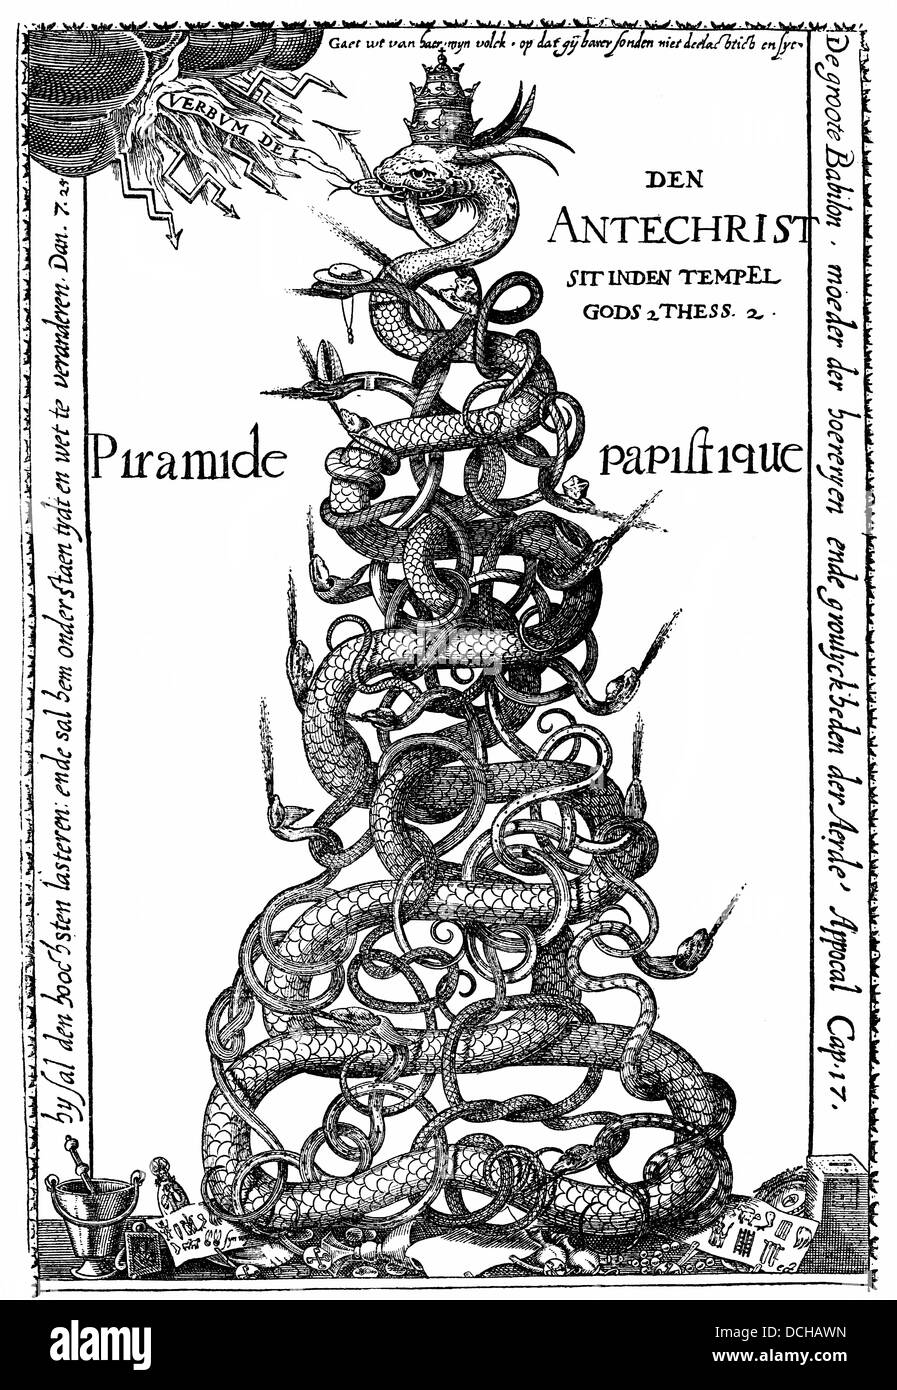 Niederländische Karikatur, Ende des 16. Jahrhunderts, die päpstliche Pyramide, den Papst als Antichrist, satirische Darstellung der kirchlichen Hierarchie Stockfoto